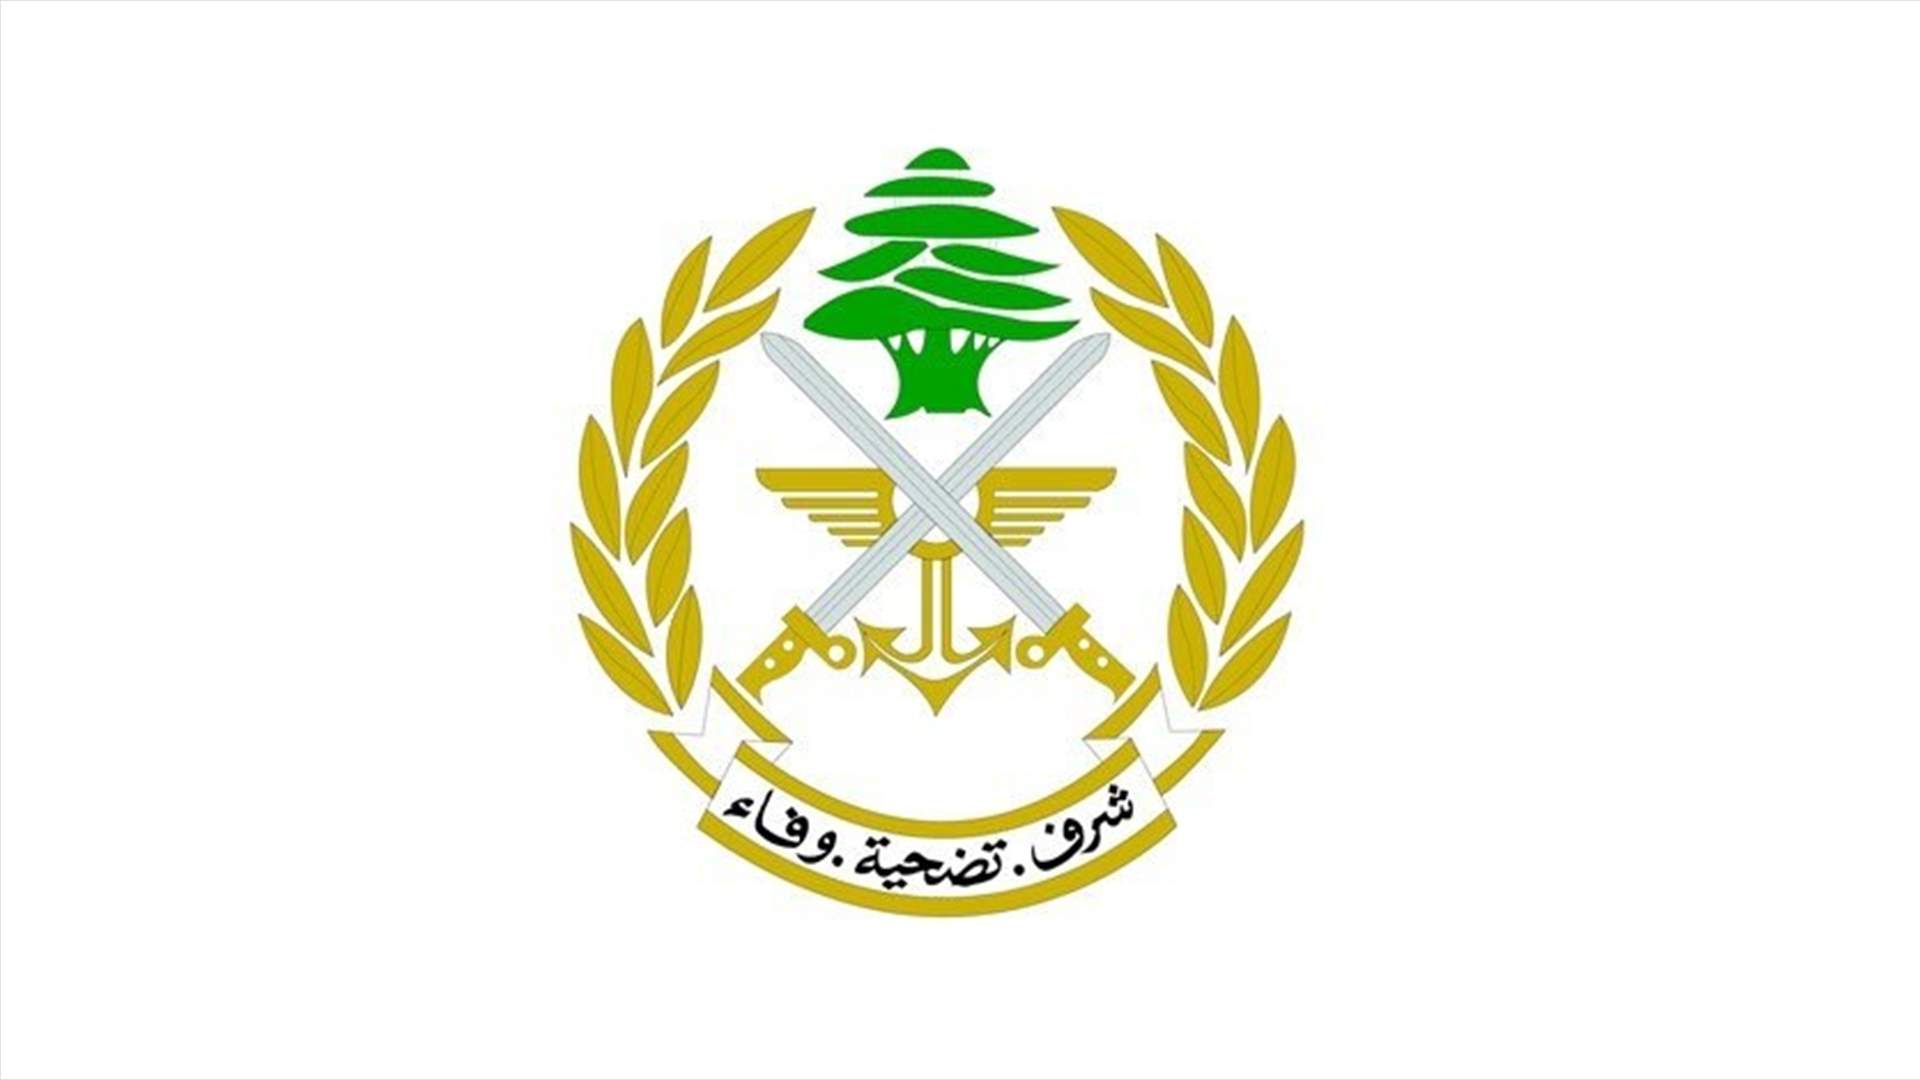 الجيش: الهدف من هذه الاخبار إرباك الساحة اللبنانية وإحداث شرخ بين اللبنانيين